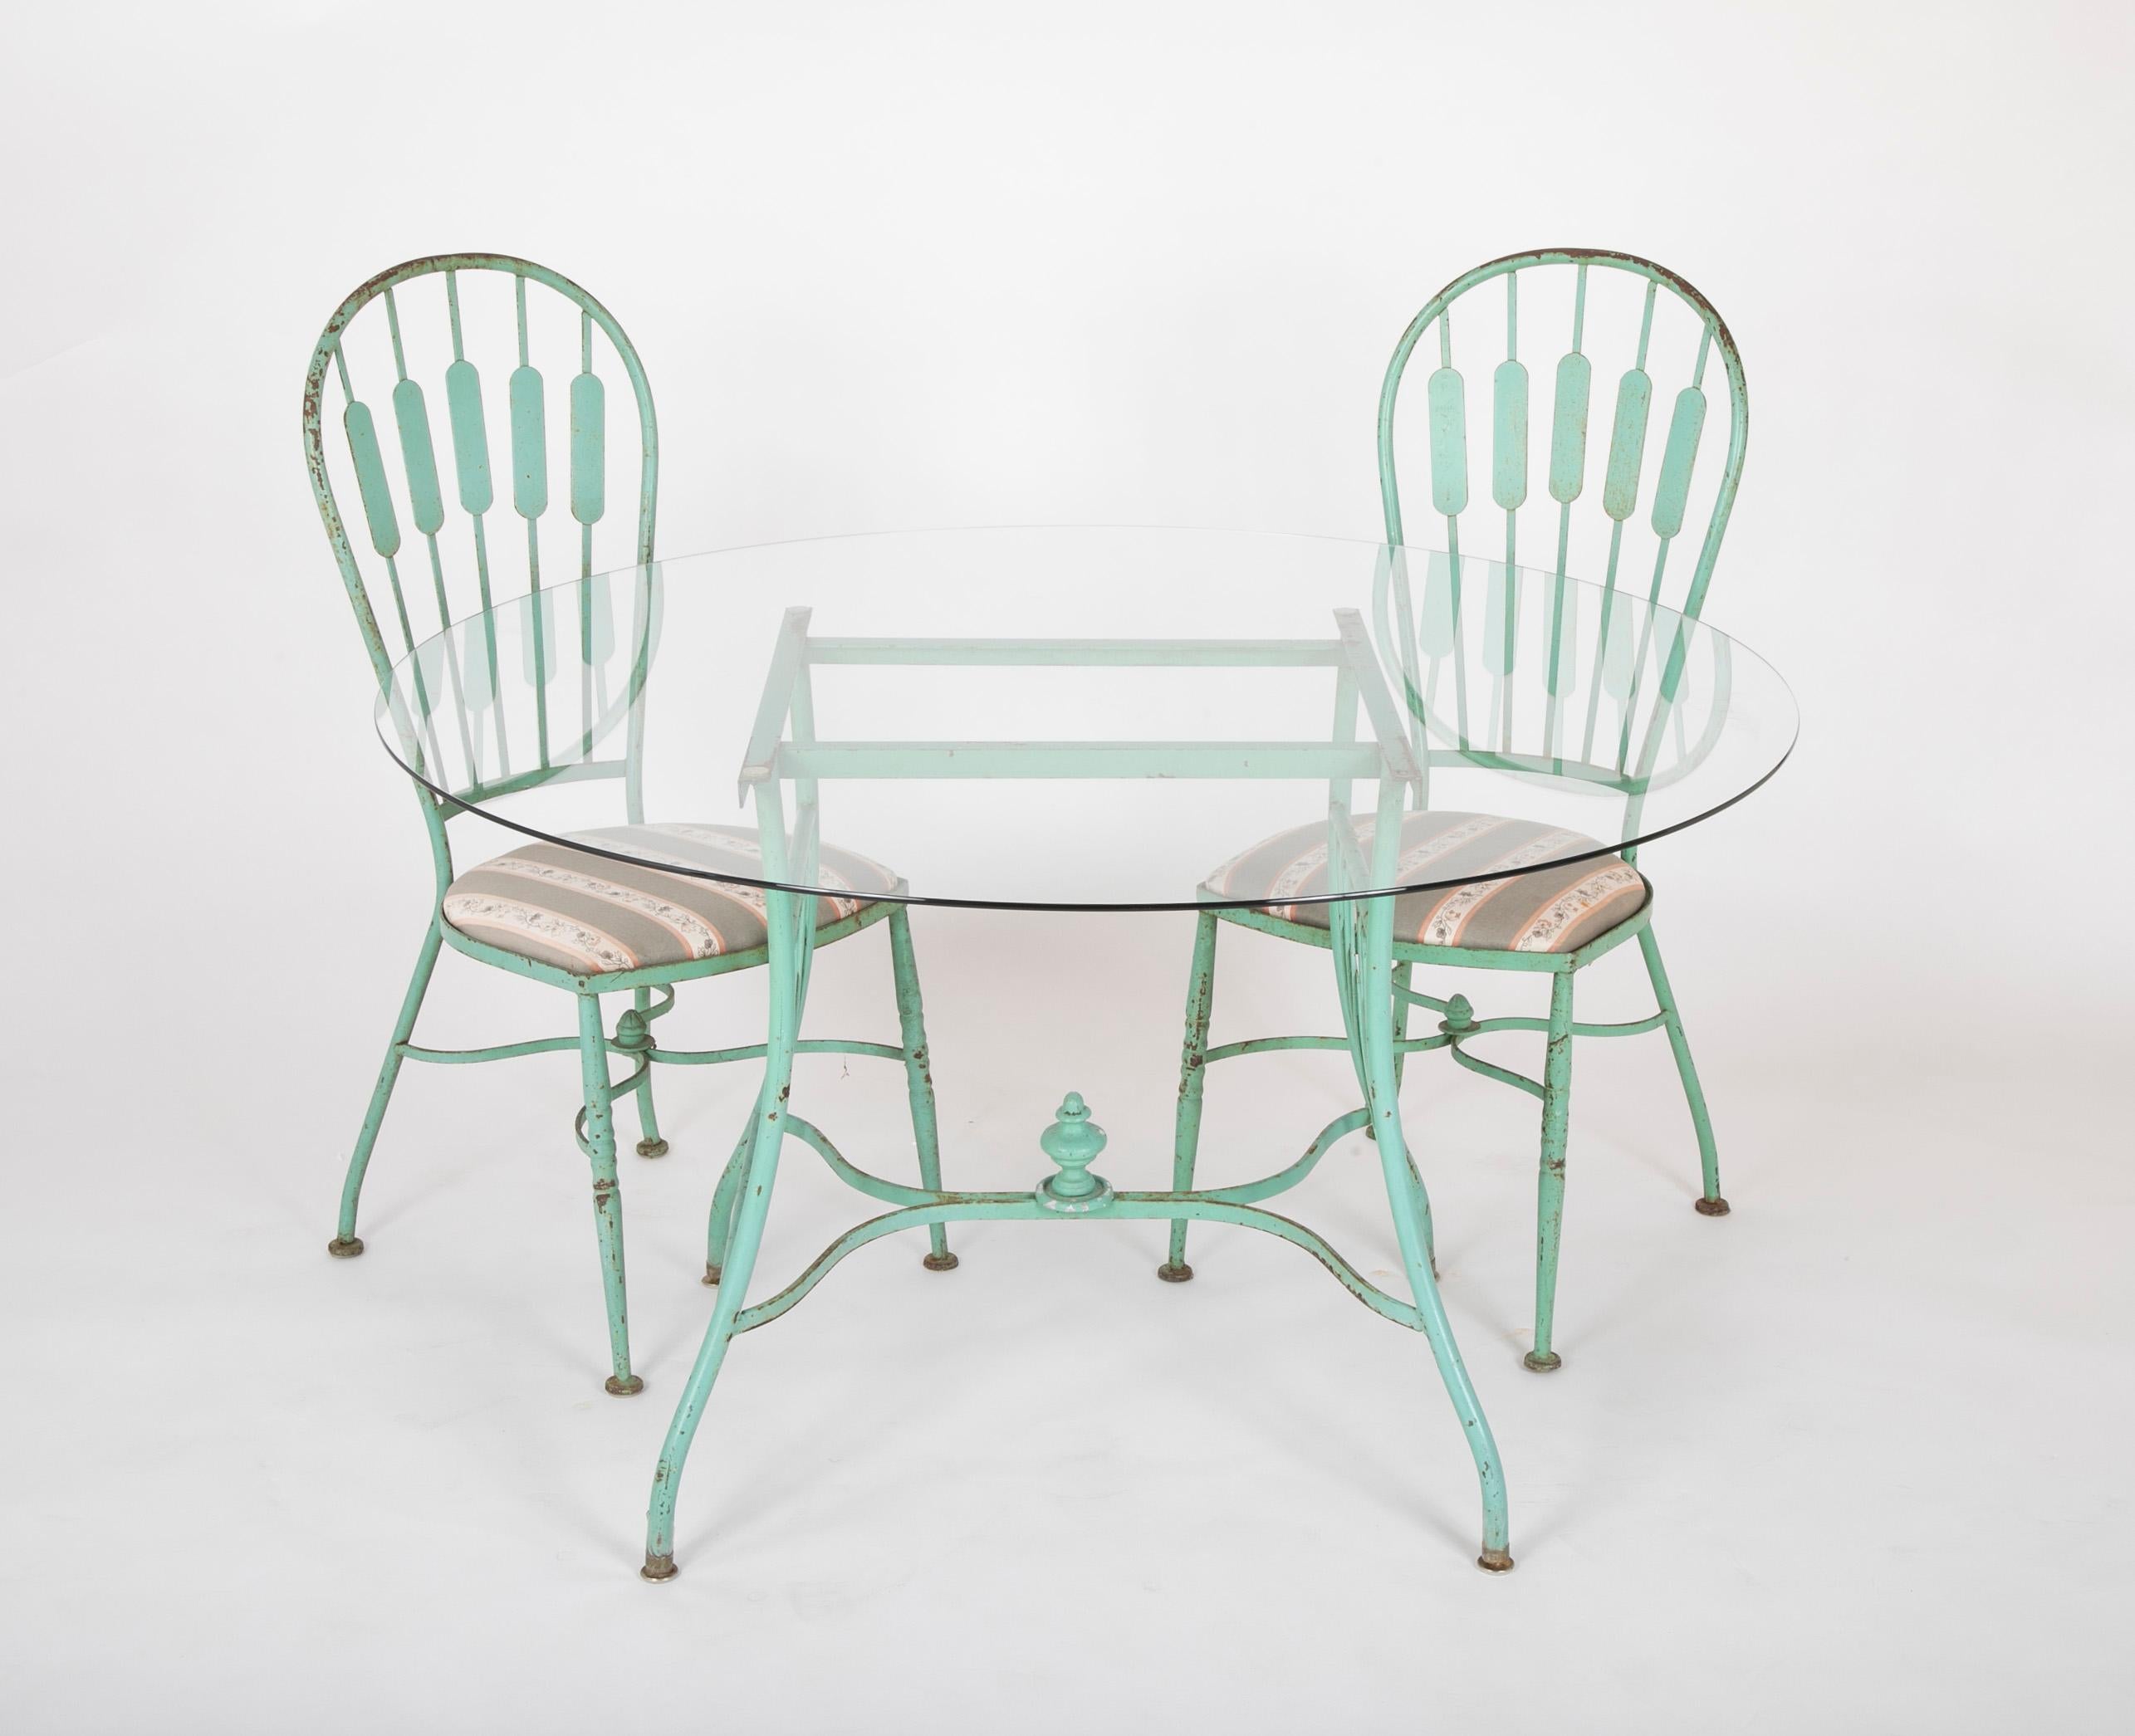 Französischer Esstisch mit eiserner Glasplatte aus dem 19. Jahrhundert und vier passenden Stühlen (Gemalt)